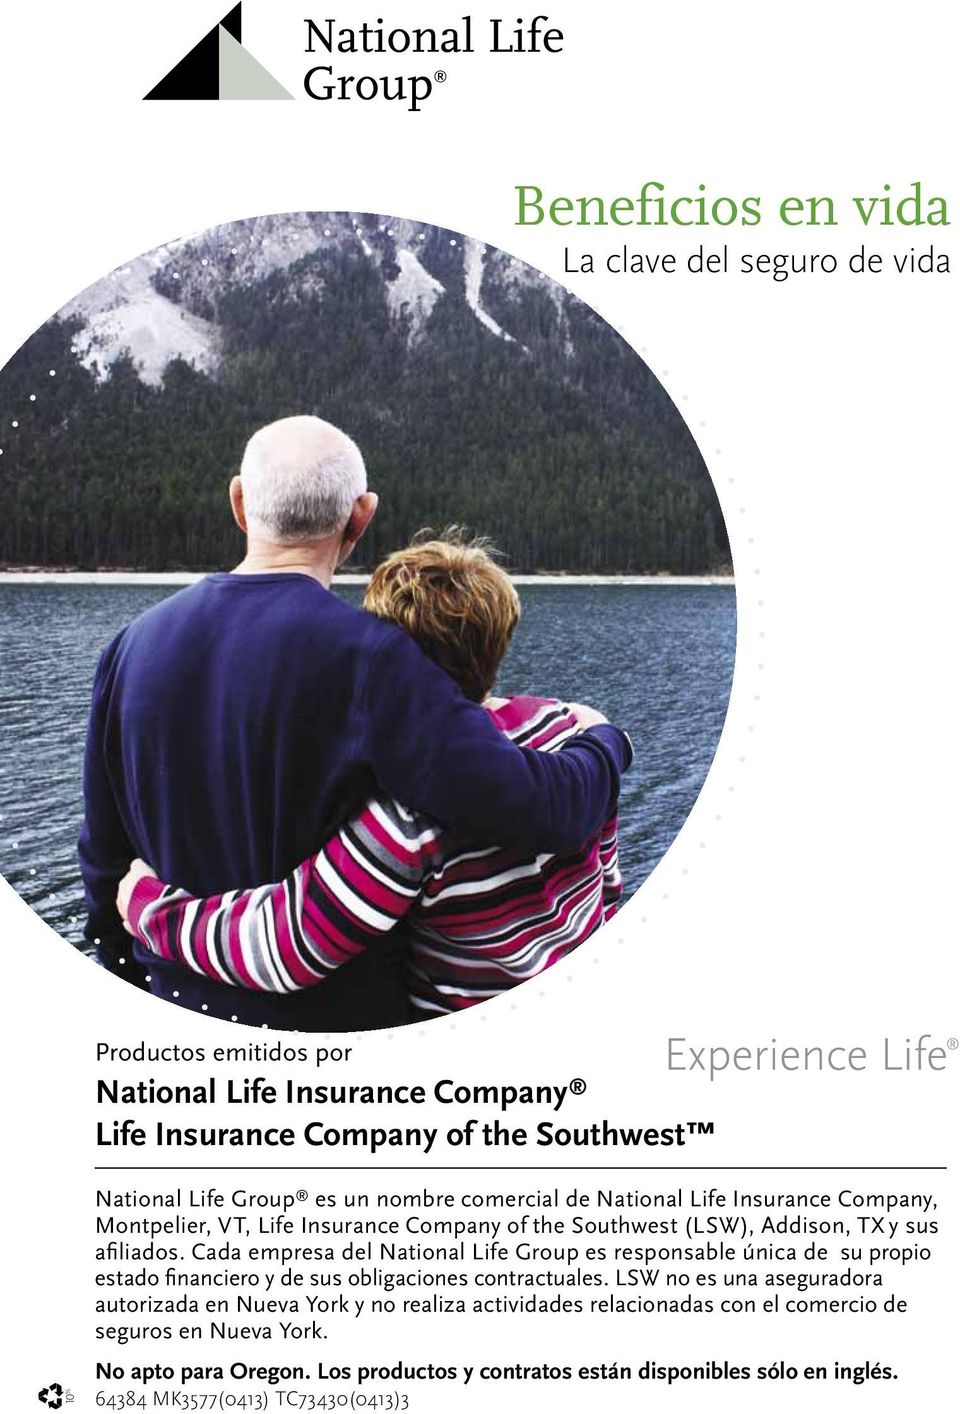 Cada empresa del National Life Group es responsable única de su propio estado financiero y de sus obligaciones contractuales.